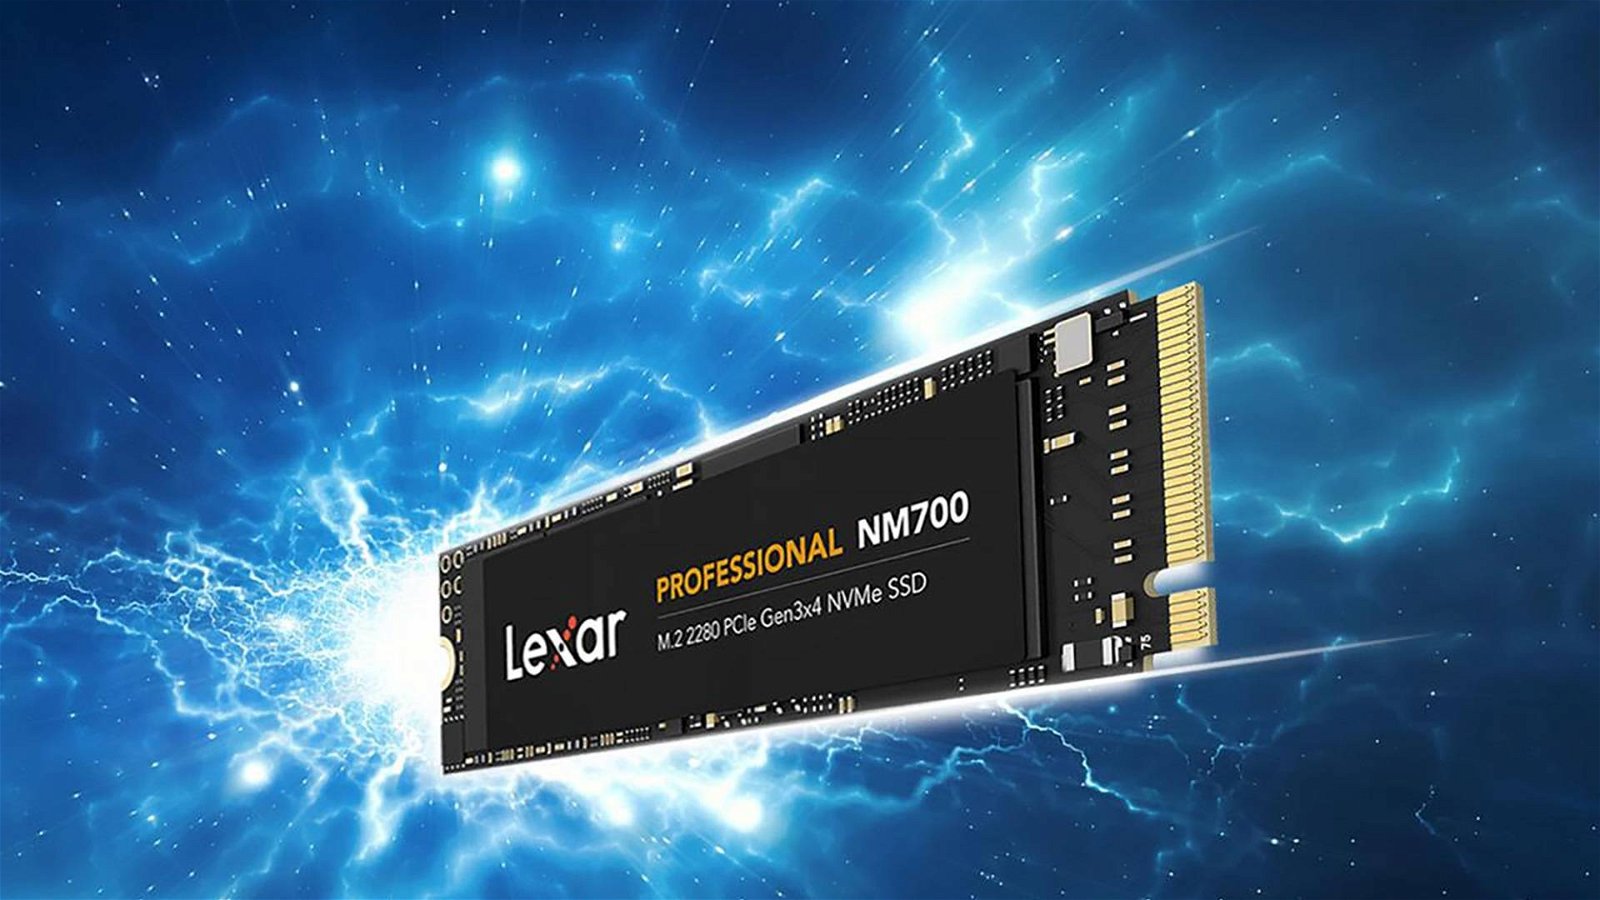 Immagine di Lexar Professional NM700, ecco il nuovo SSD NVMe per content creator